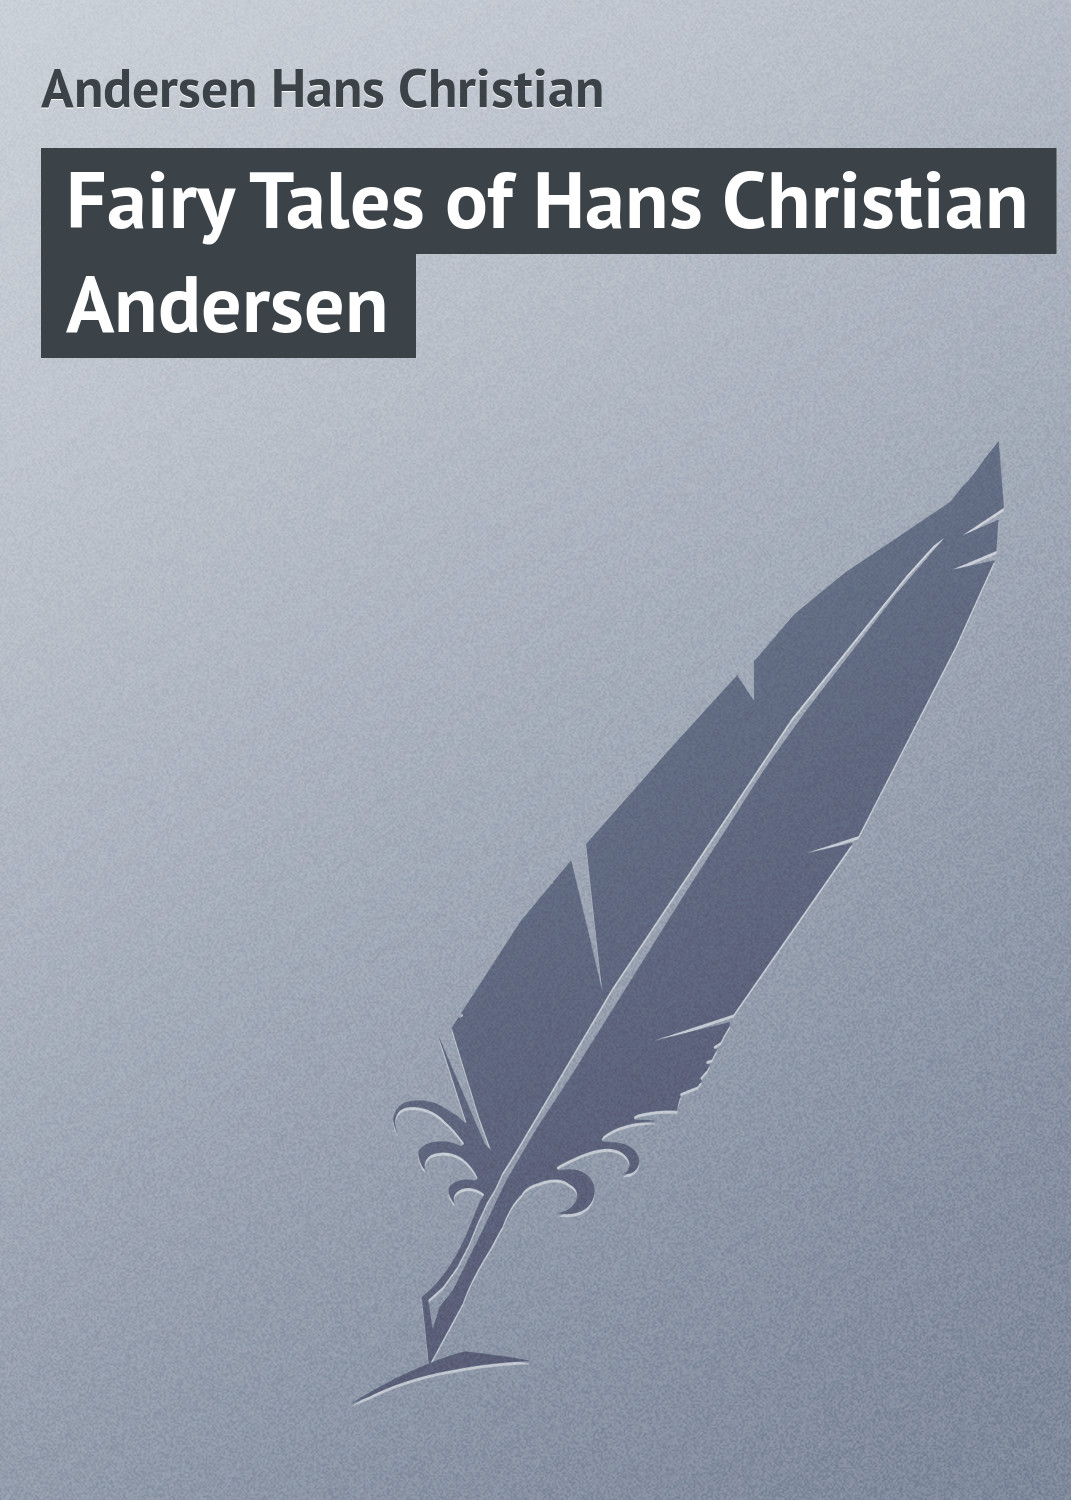 Книга Fairy Tales of Hans Christian Andersen из серии , созданная Andersen Hans, может относится к жанру Иностранные языки, Зарубежная классика. Стоимость электронной книги Fairy Tales of Hans Christian Andersen с идентификатором 23148683 составляет 5.99 руб.